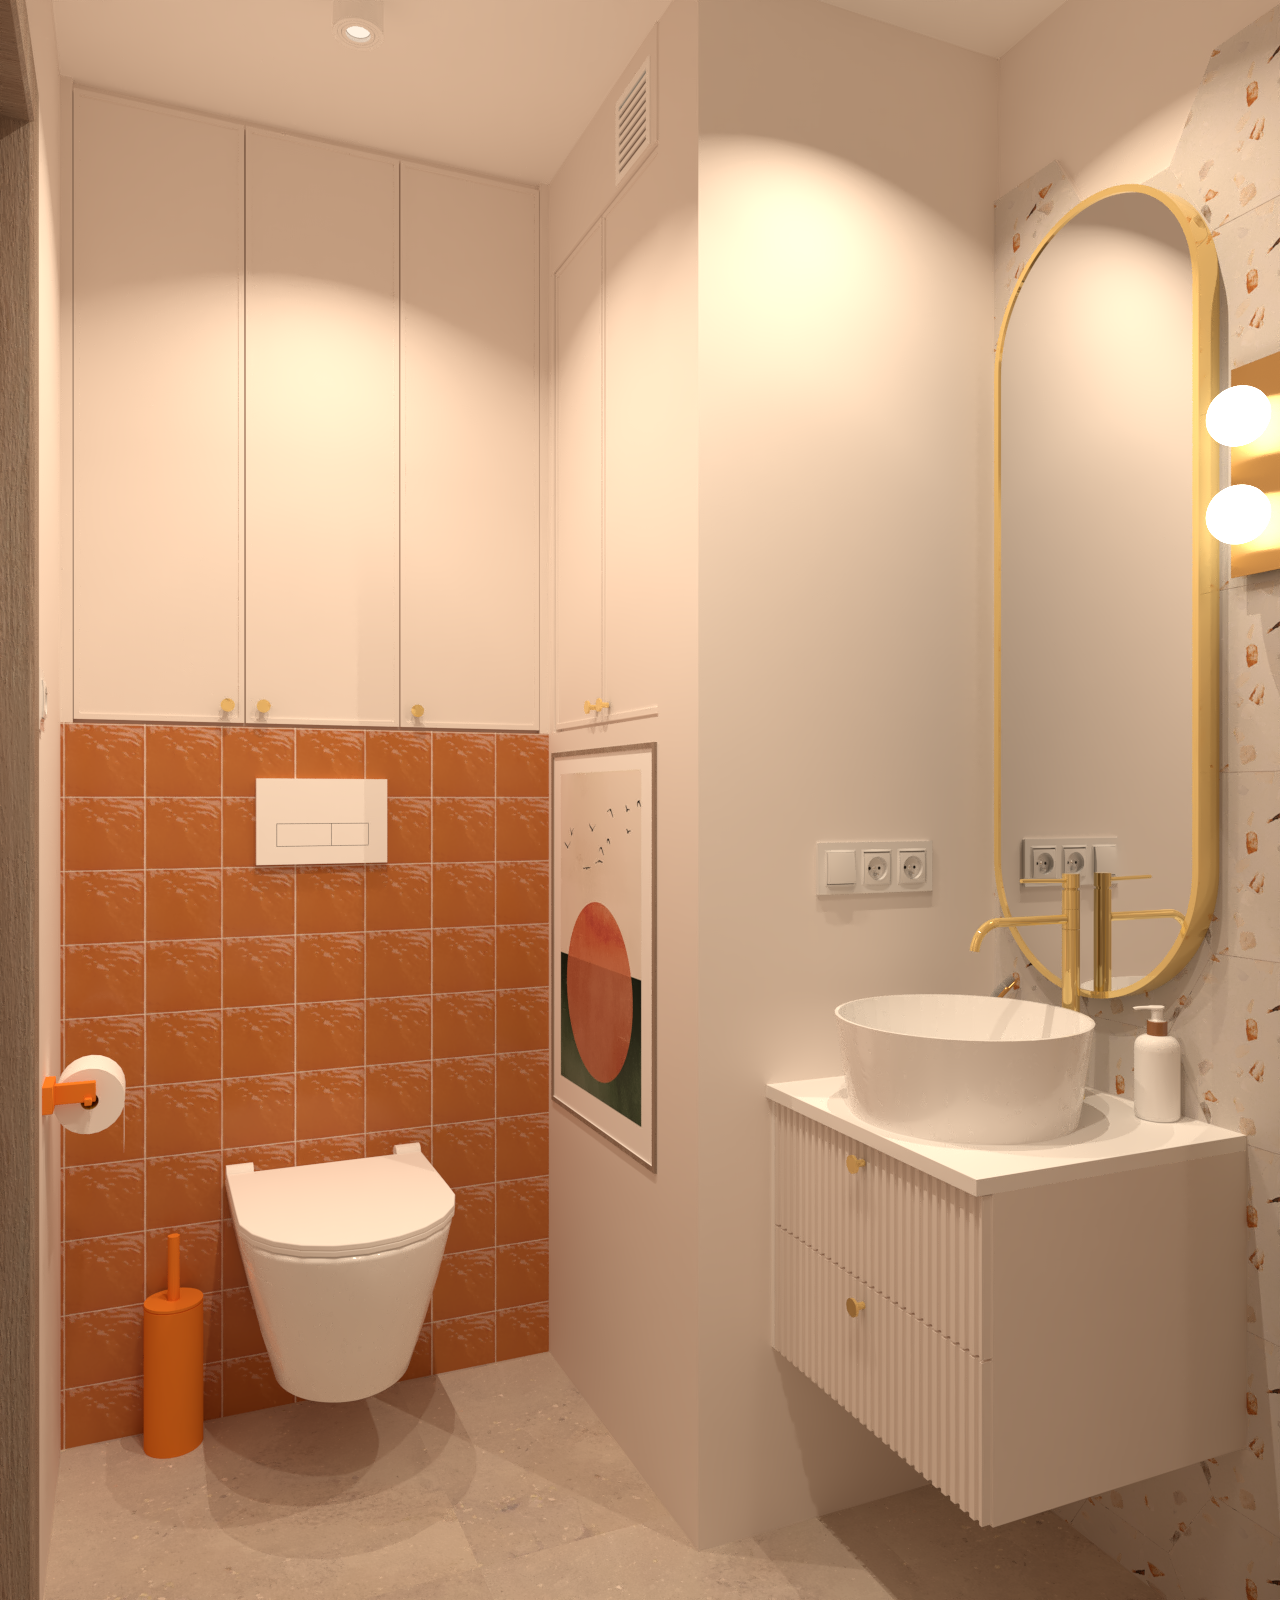 Pomarańczowo beżowa łazienka z elementami złota i heksagonalnymi płytkami.